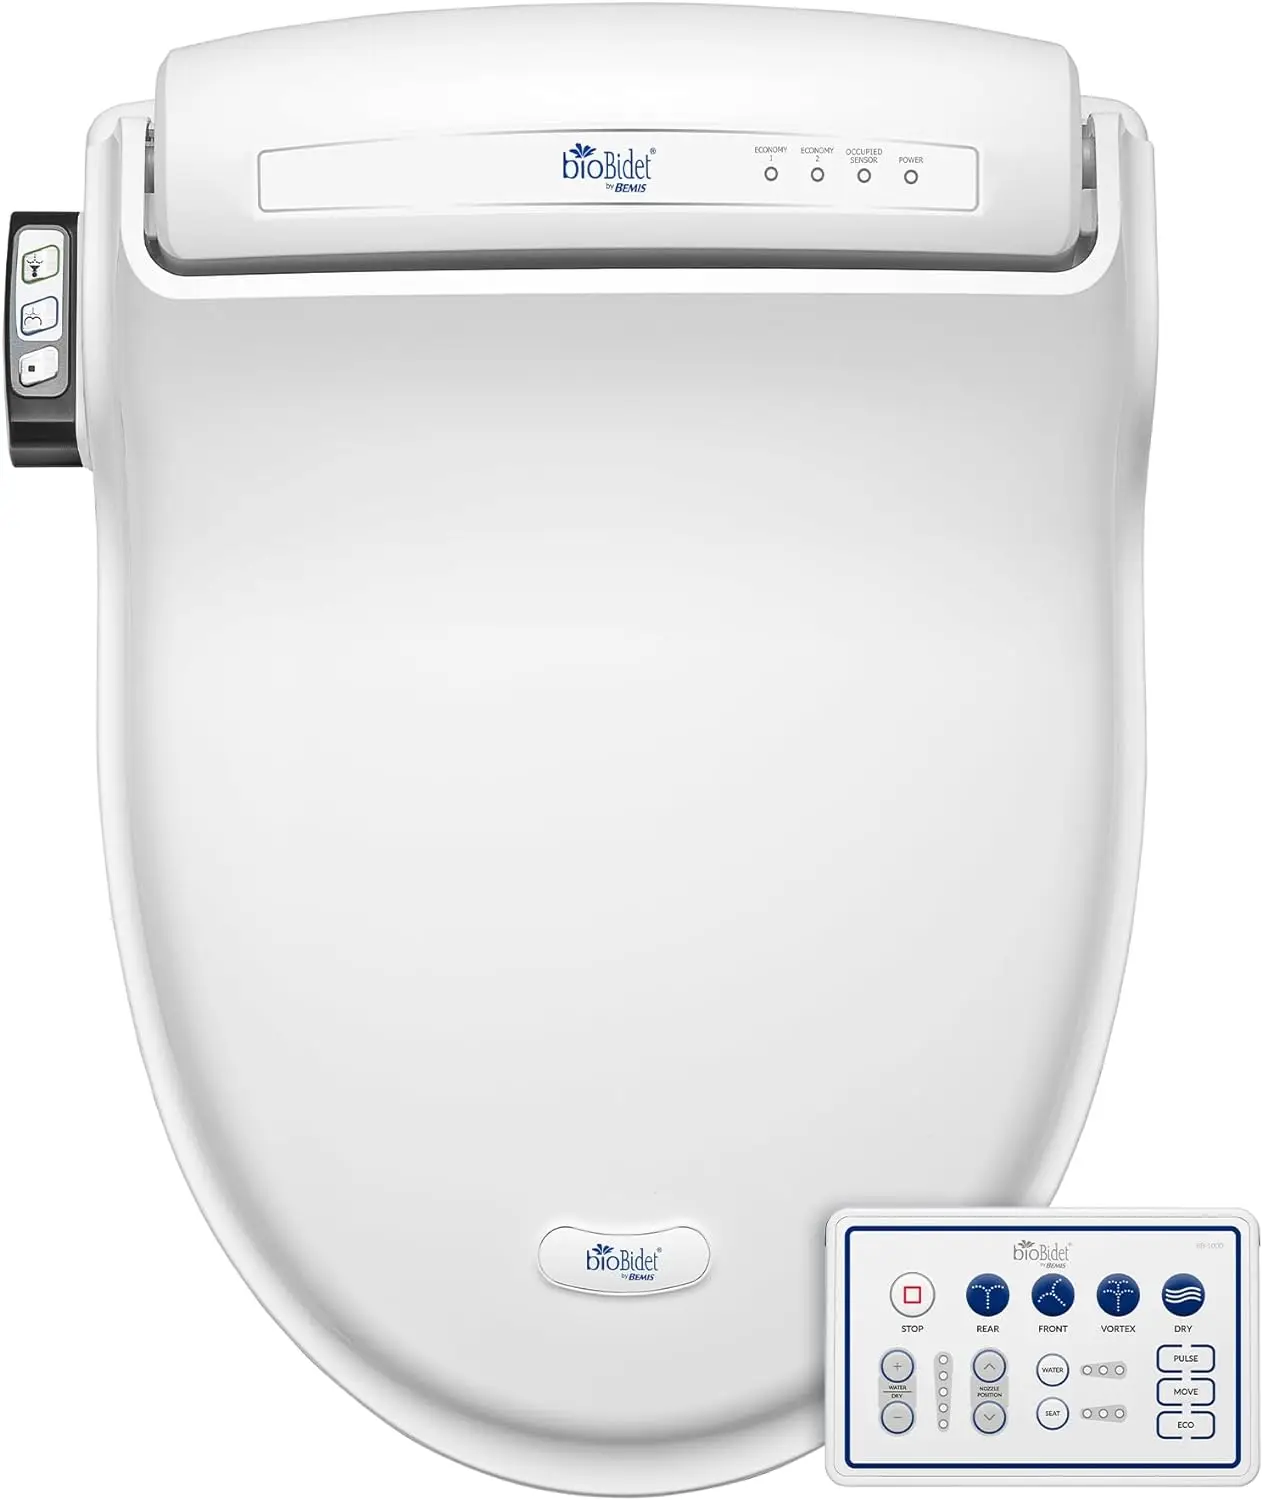 

Bio Bidet by Bemis BB-1000W Warm Water Bidet Toilet Seat, Round, White